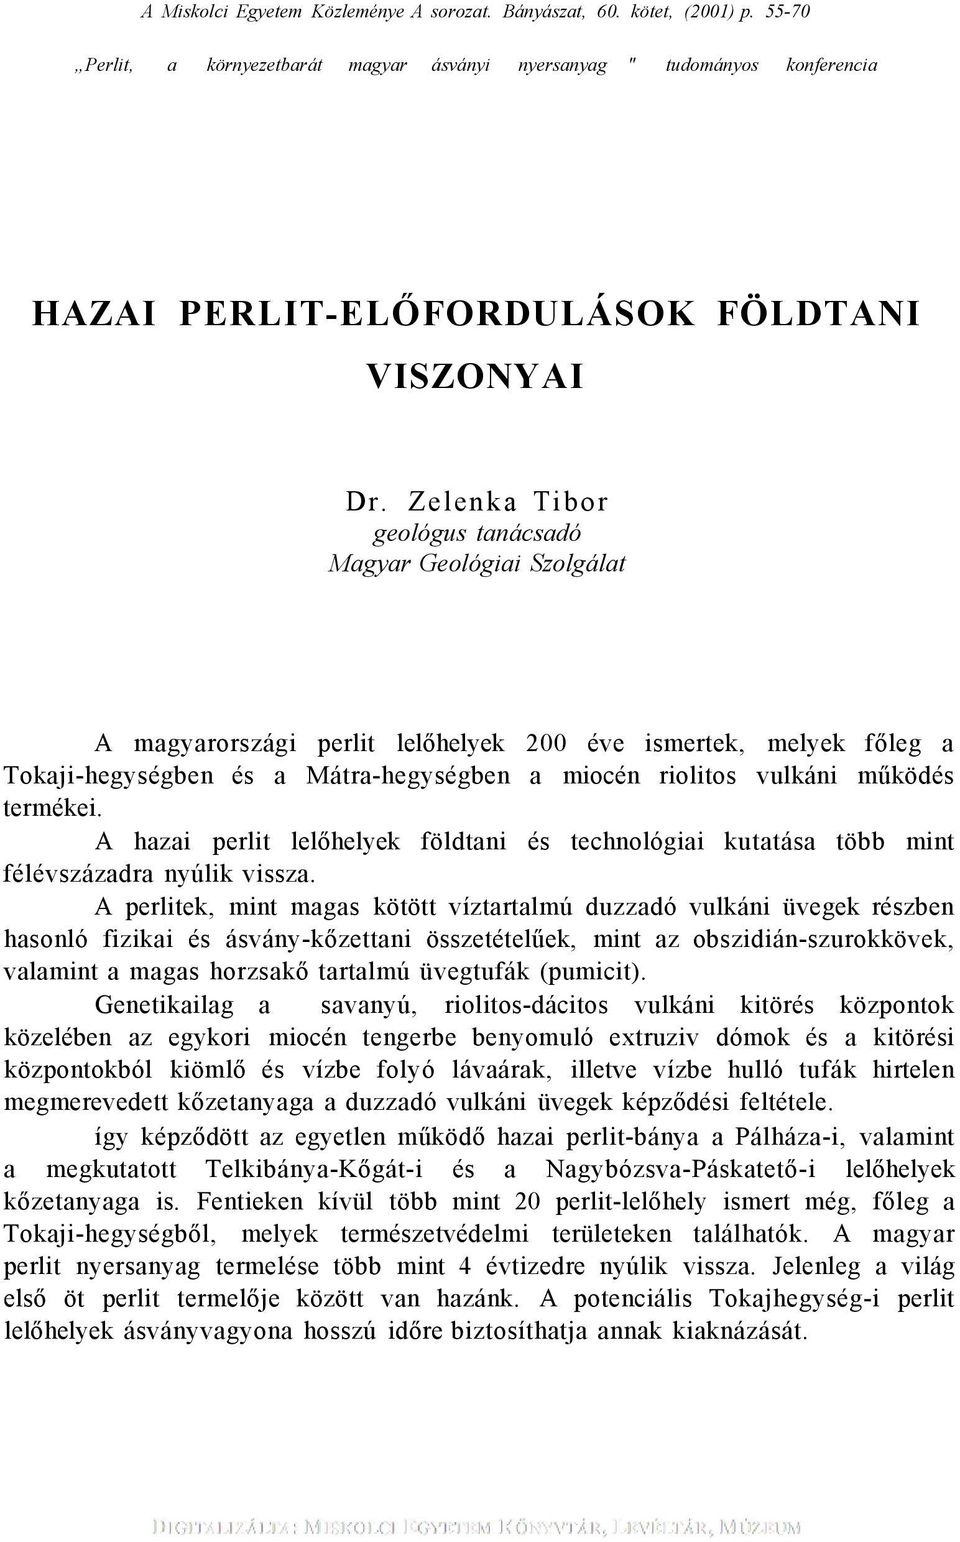 Zelenka Tibor geológus tanácsadó Magyar Geológiai Szolgálat A magyarországi perlit lelőhelyek 200 éve ismertek, melyek főleg a Tokaji-hegységben és a Mátra-hegységben a miocén riolitos vulkáni